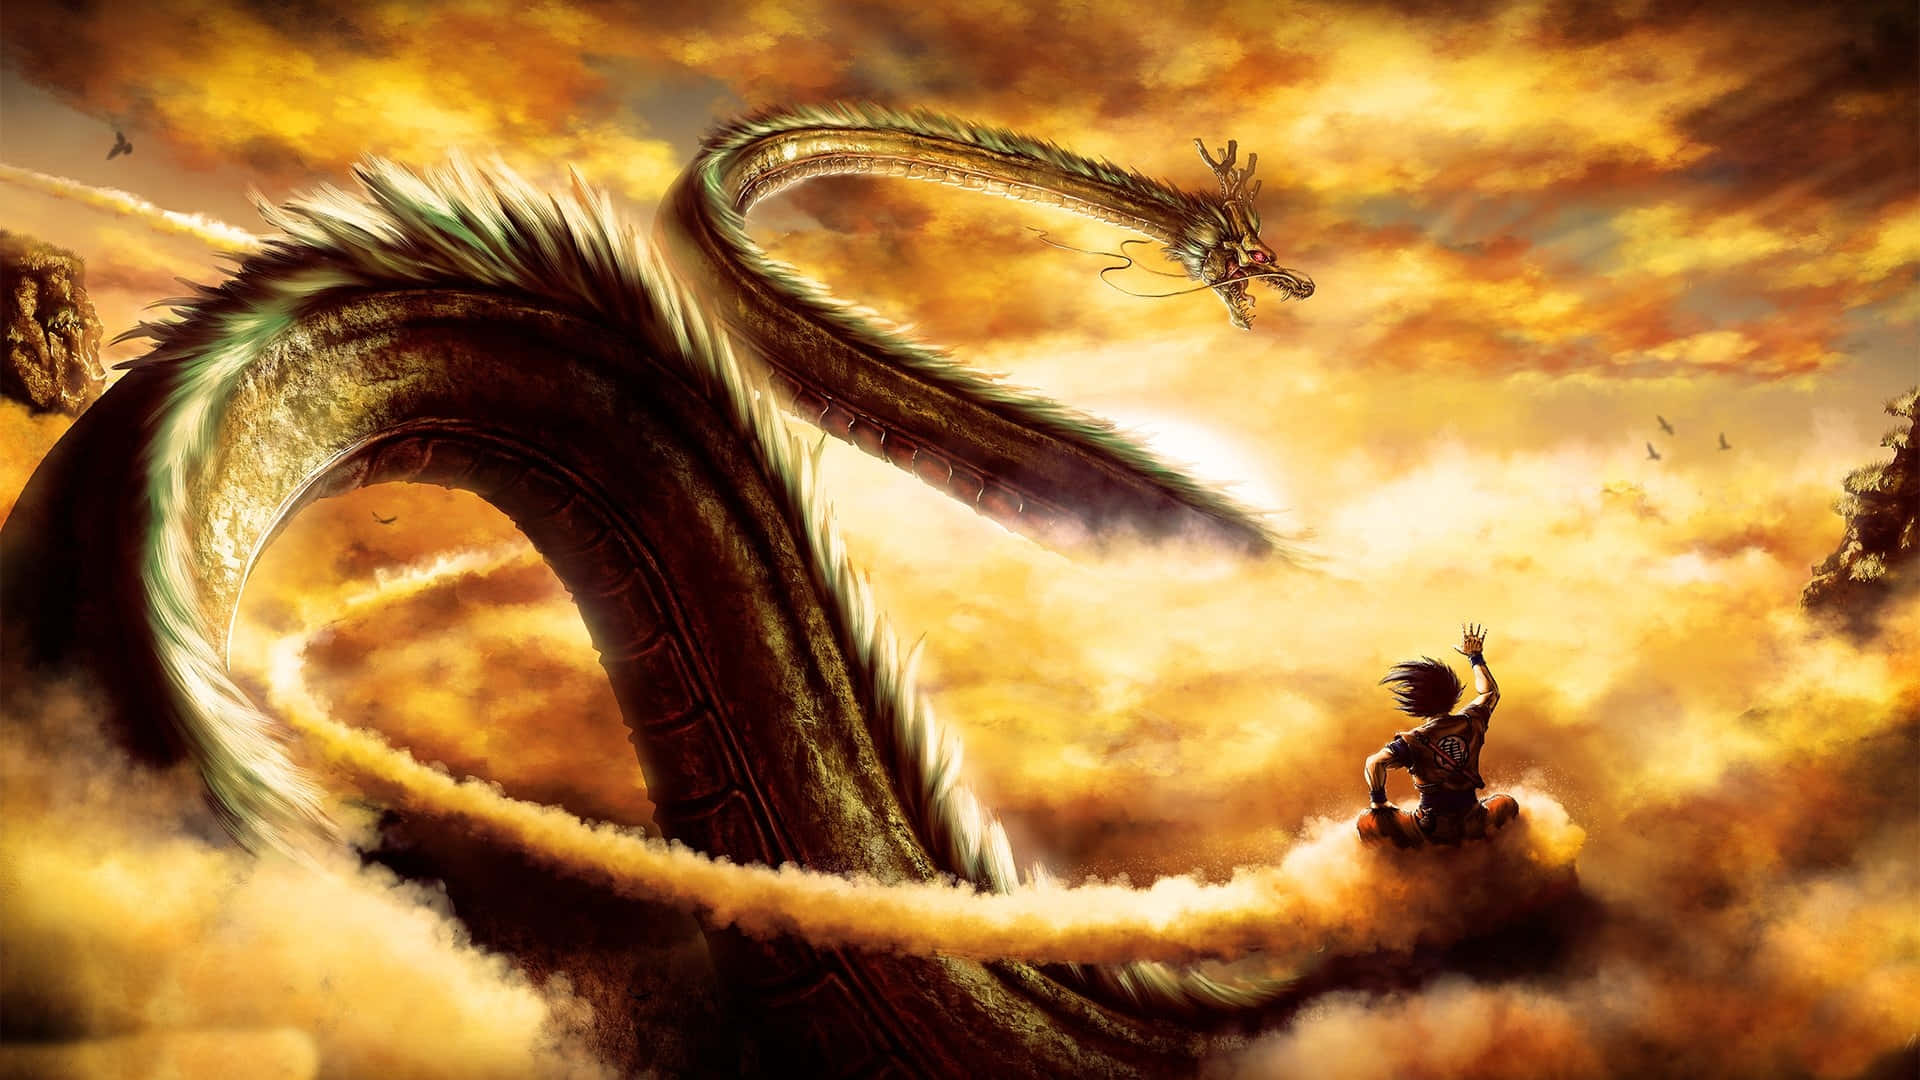 Imagende Dragon Ball Z Con Nubes.